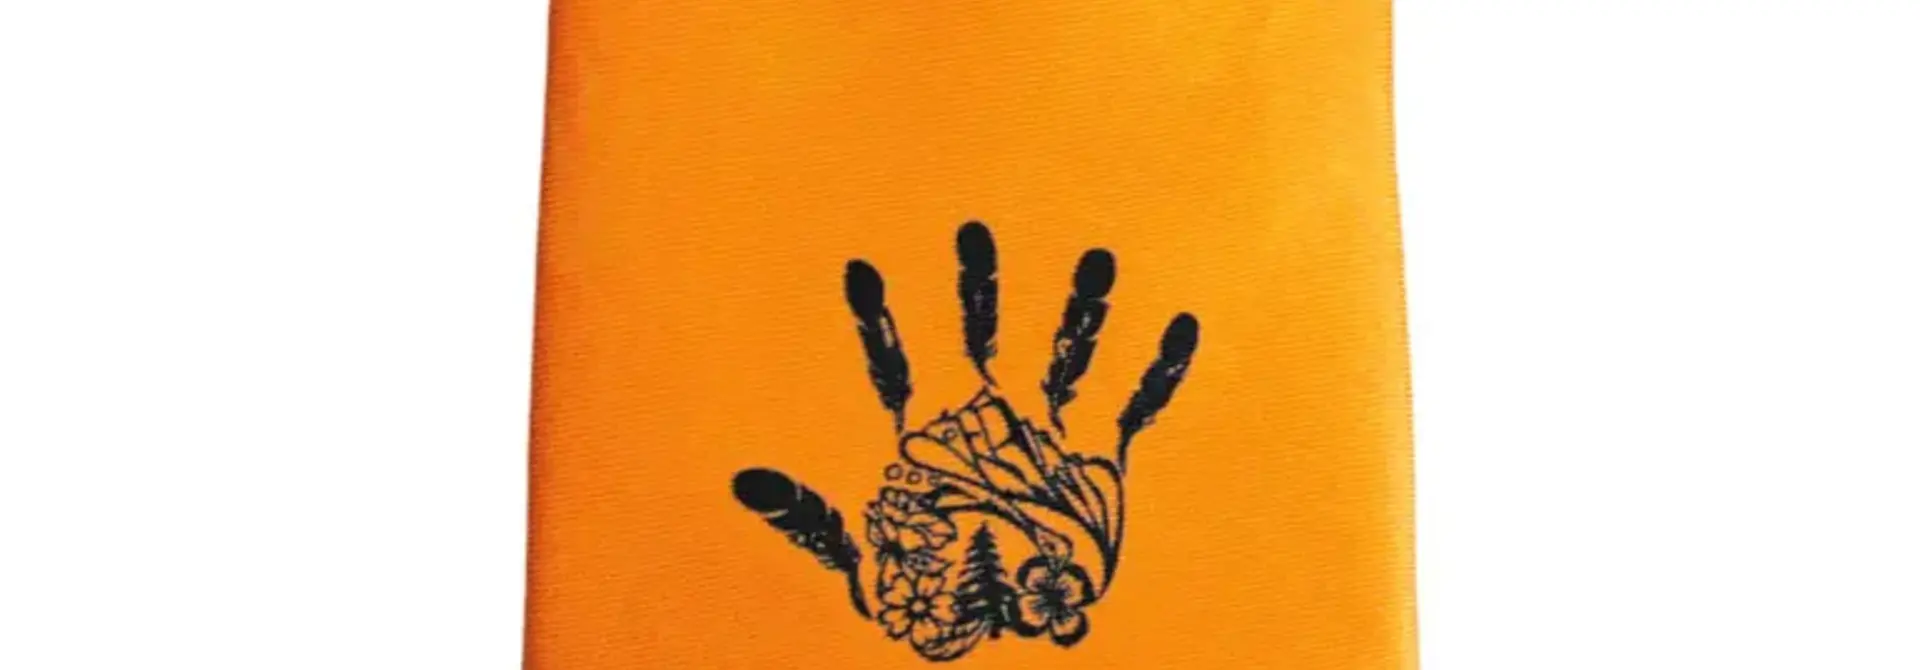 Gitxsan Hand Silk Tie by Michelle Stoney